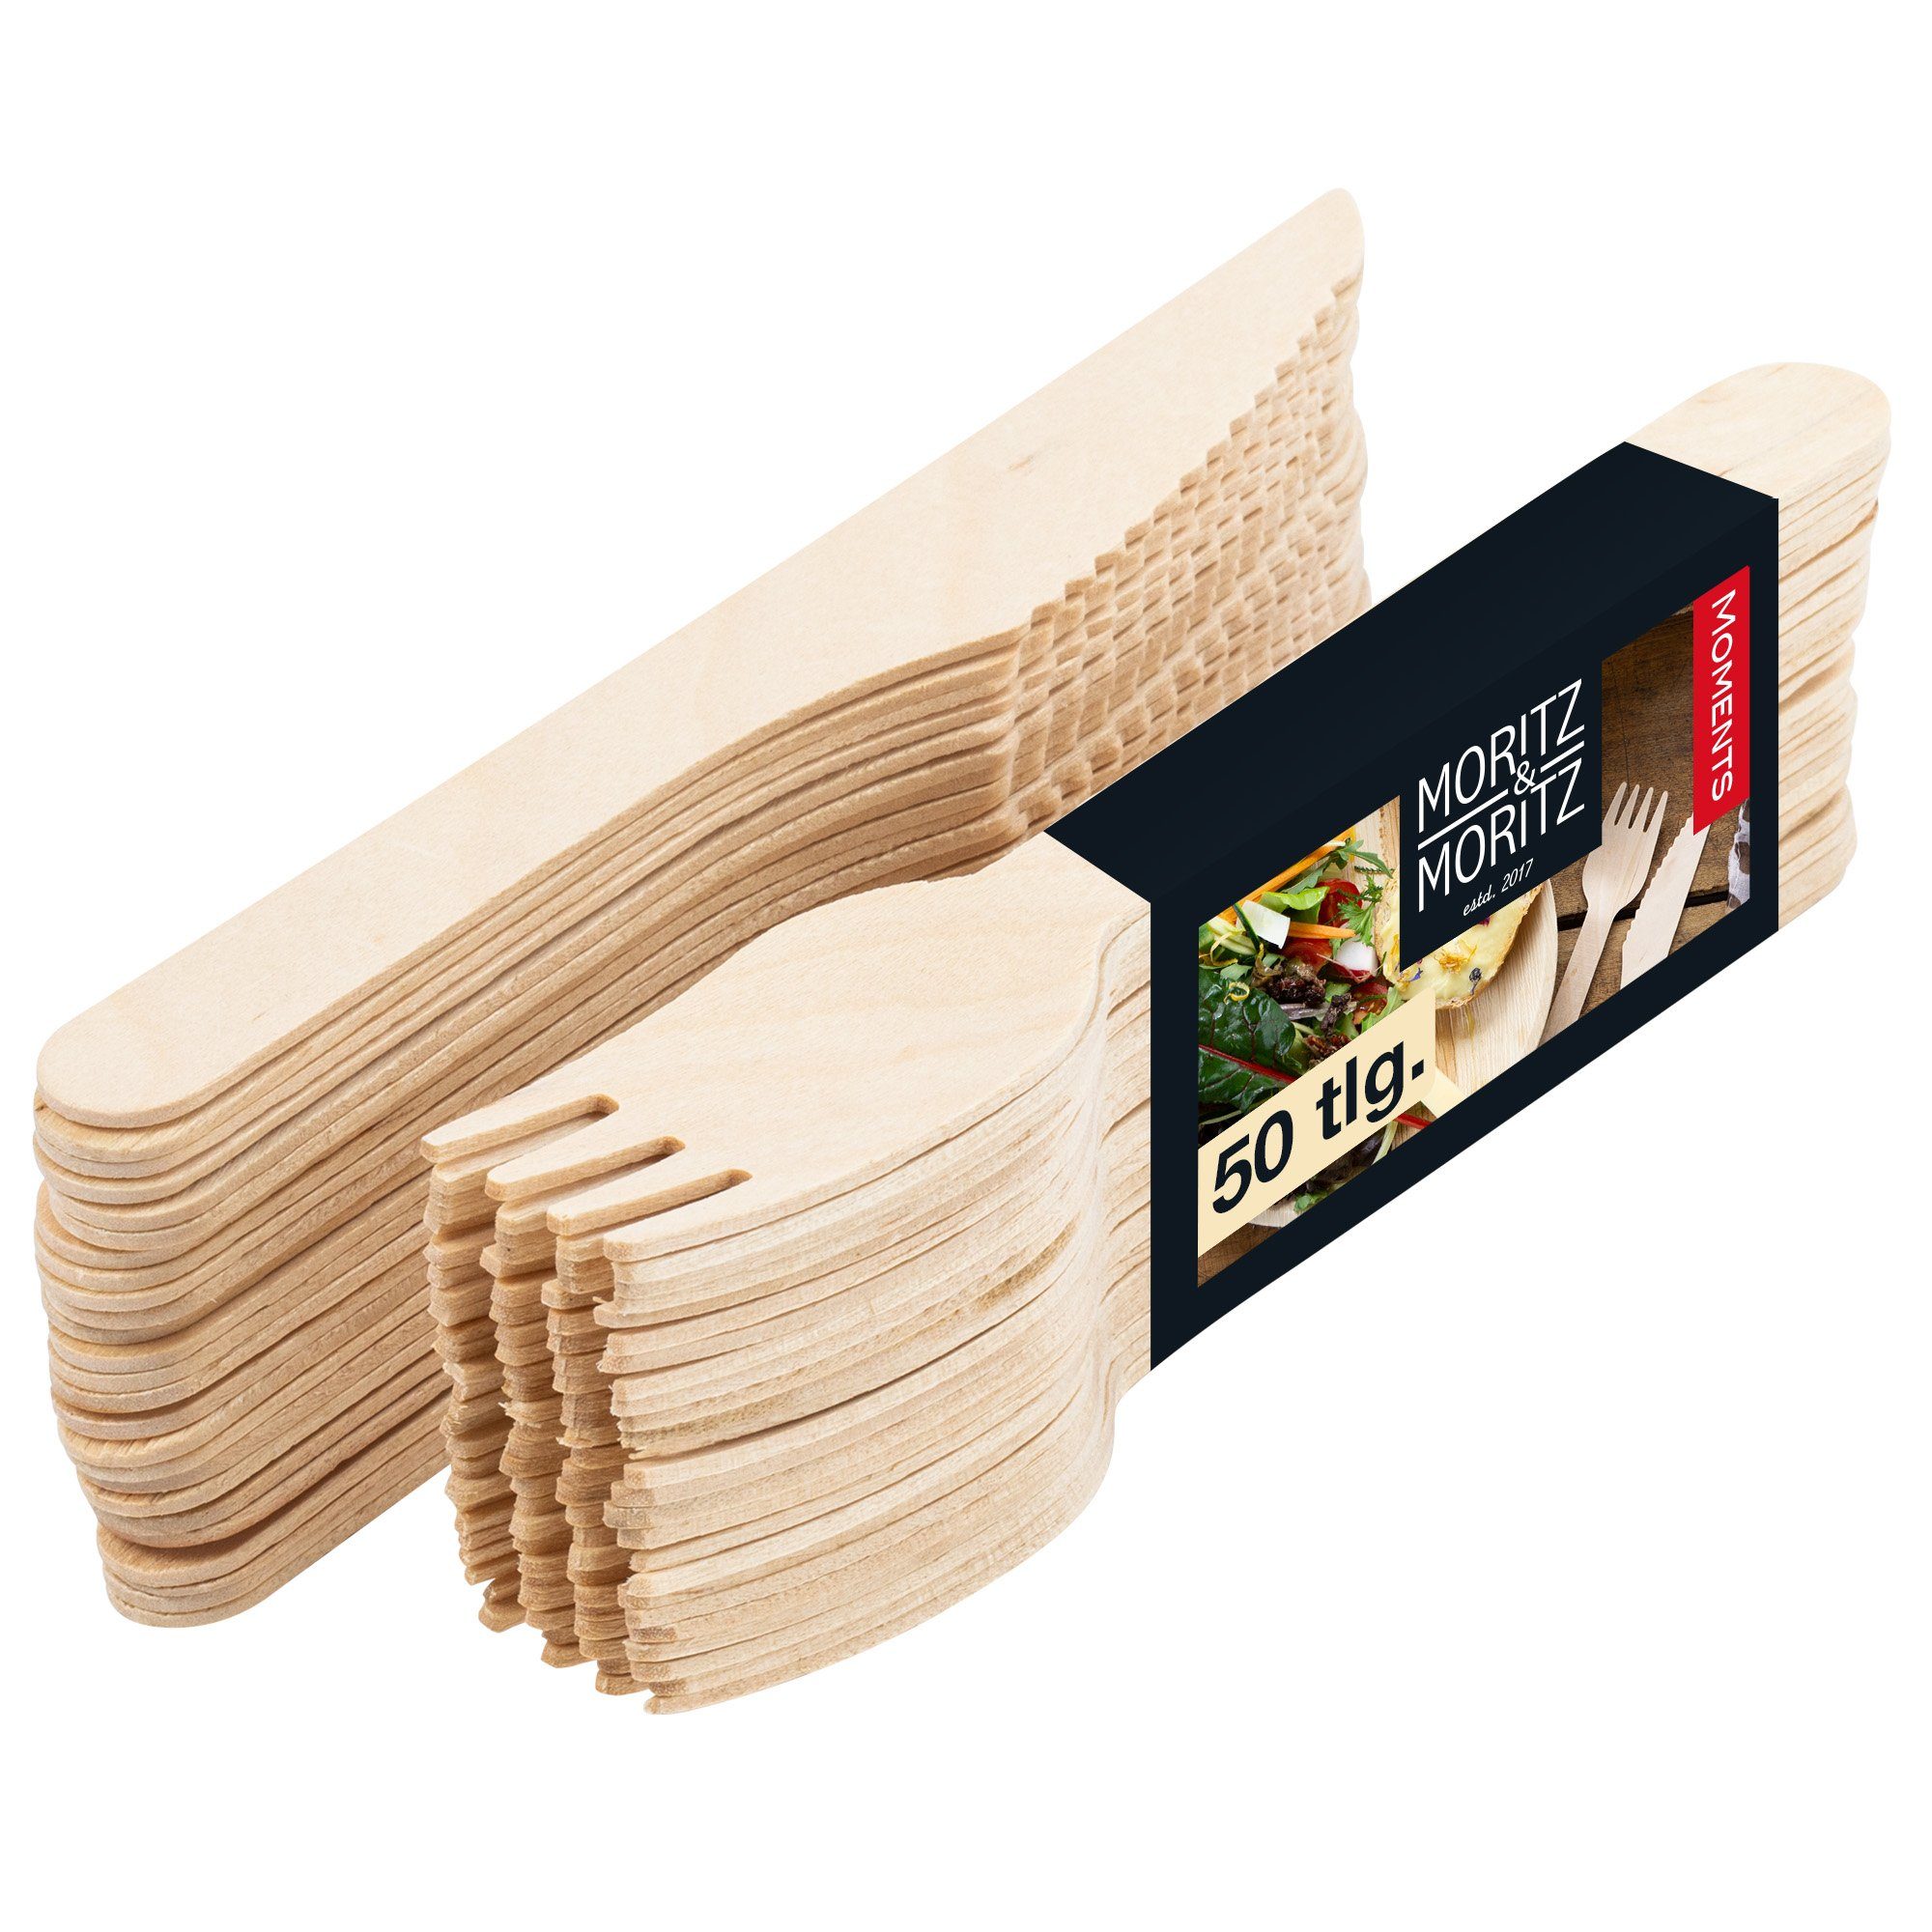 Moritz & Moritz Besteck-Set Besteck Holz 25 Gablen und Messer, 50-tlg -  Kompostierbares Holzbesteck als Alternative zu Plastikbesteck